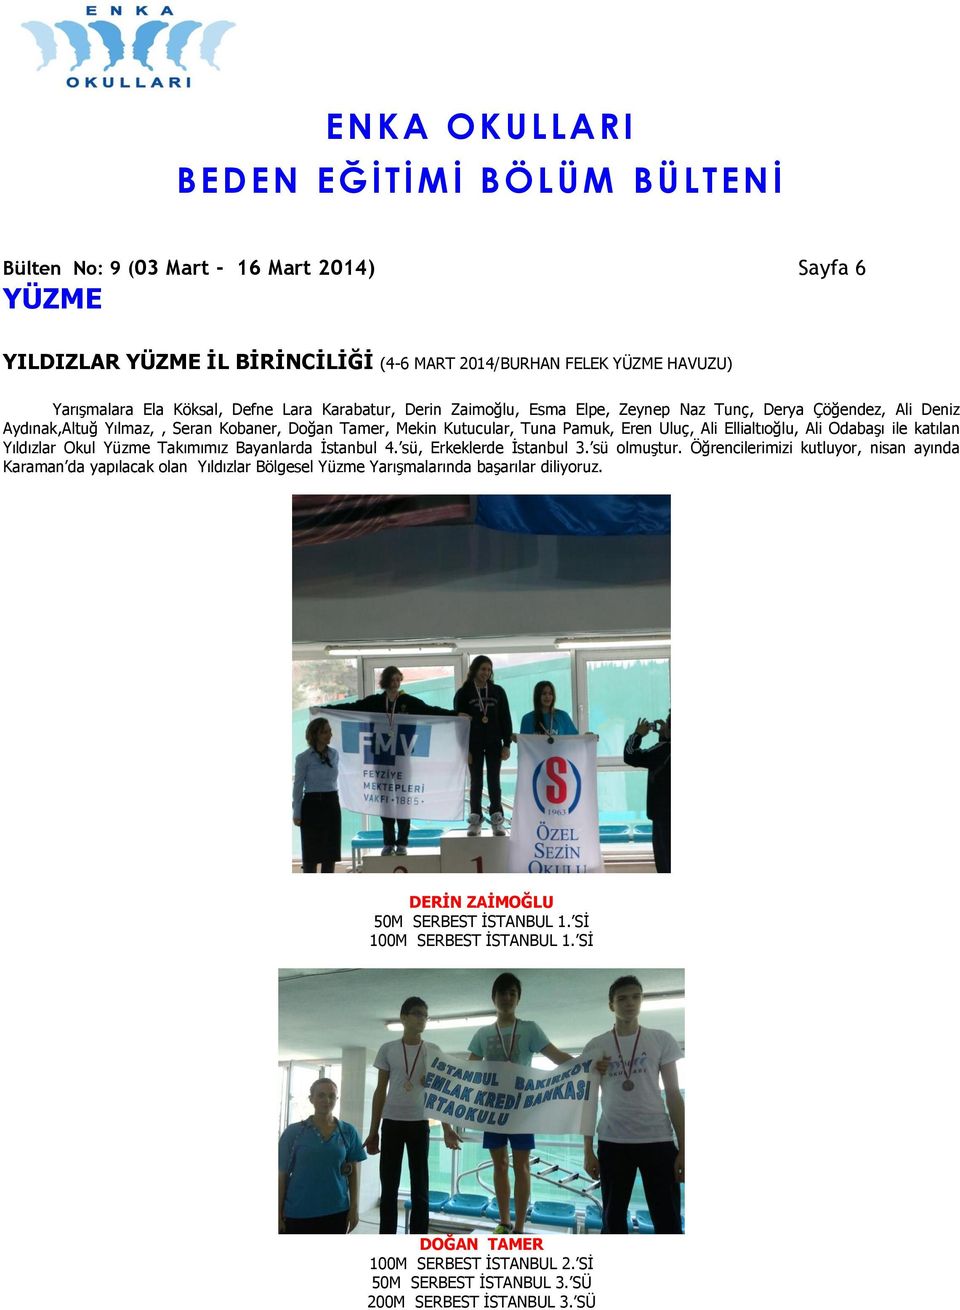 Yıldızlar Okul Yüzme Takımımız Bayanlarda İstanbul 4. sü, Erkeklerde İstanbul 3. sü olmuştur.